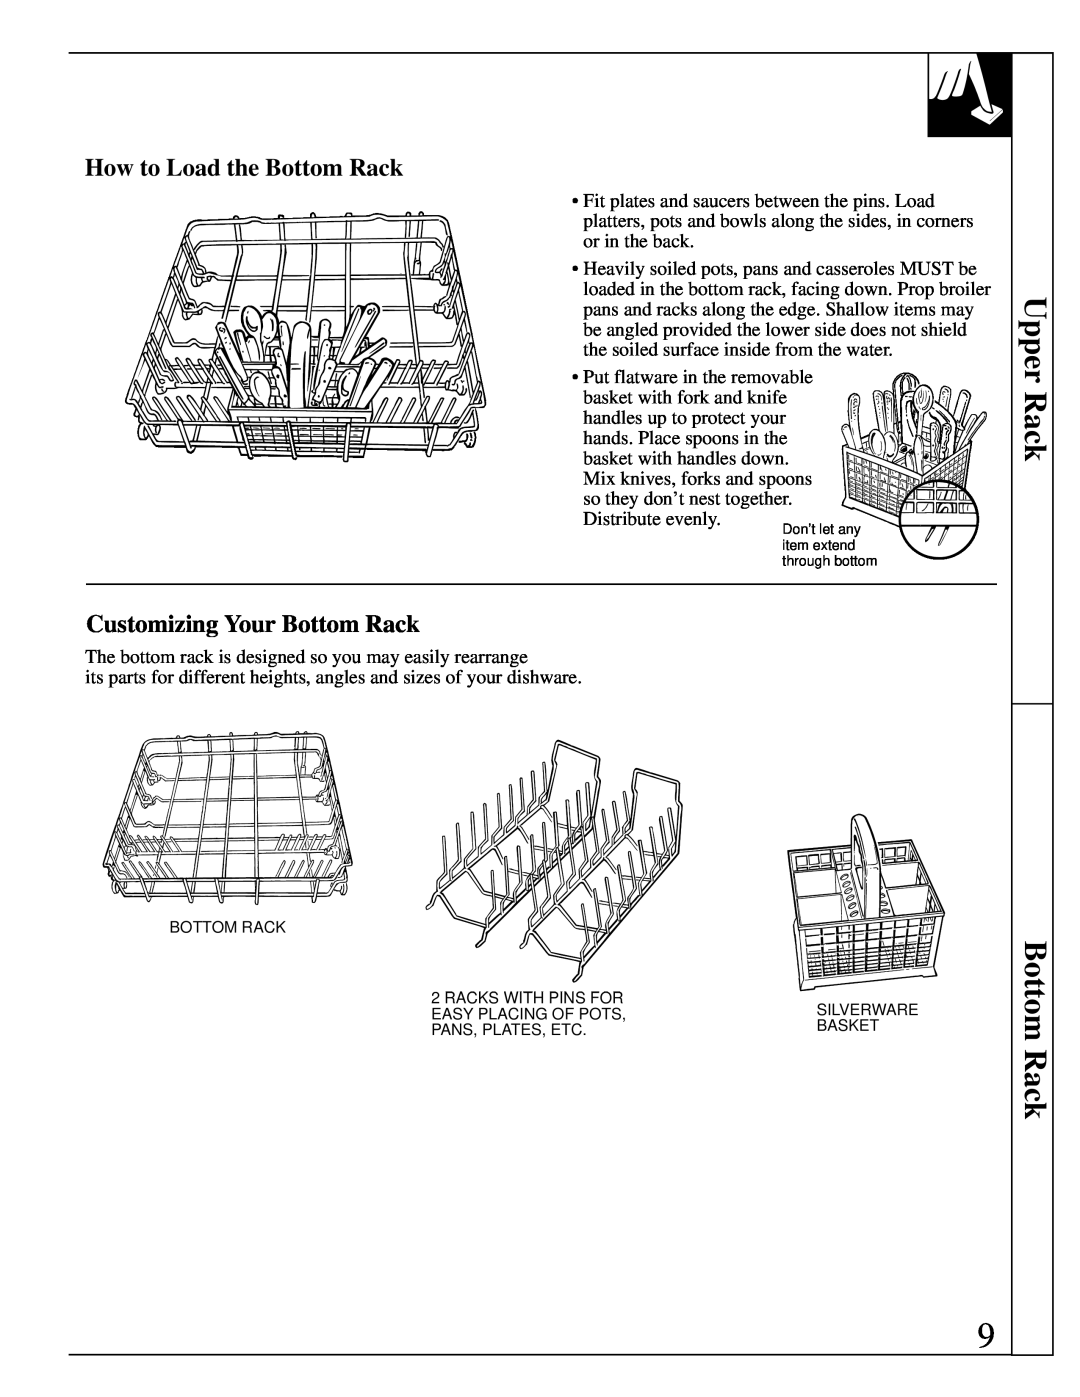 GE Monogram ZBD4600 manual Upper Rack Bottom Rack, How to Load the Bottom Rack, Customizing Your Bottom Rack 